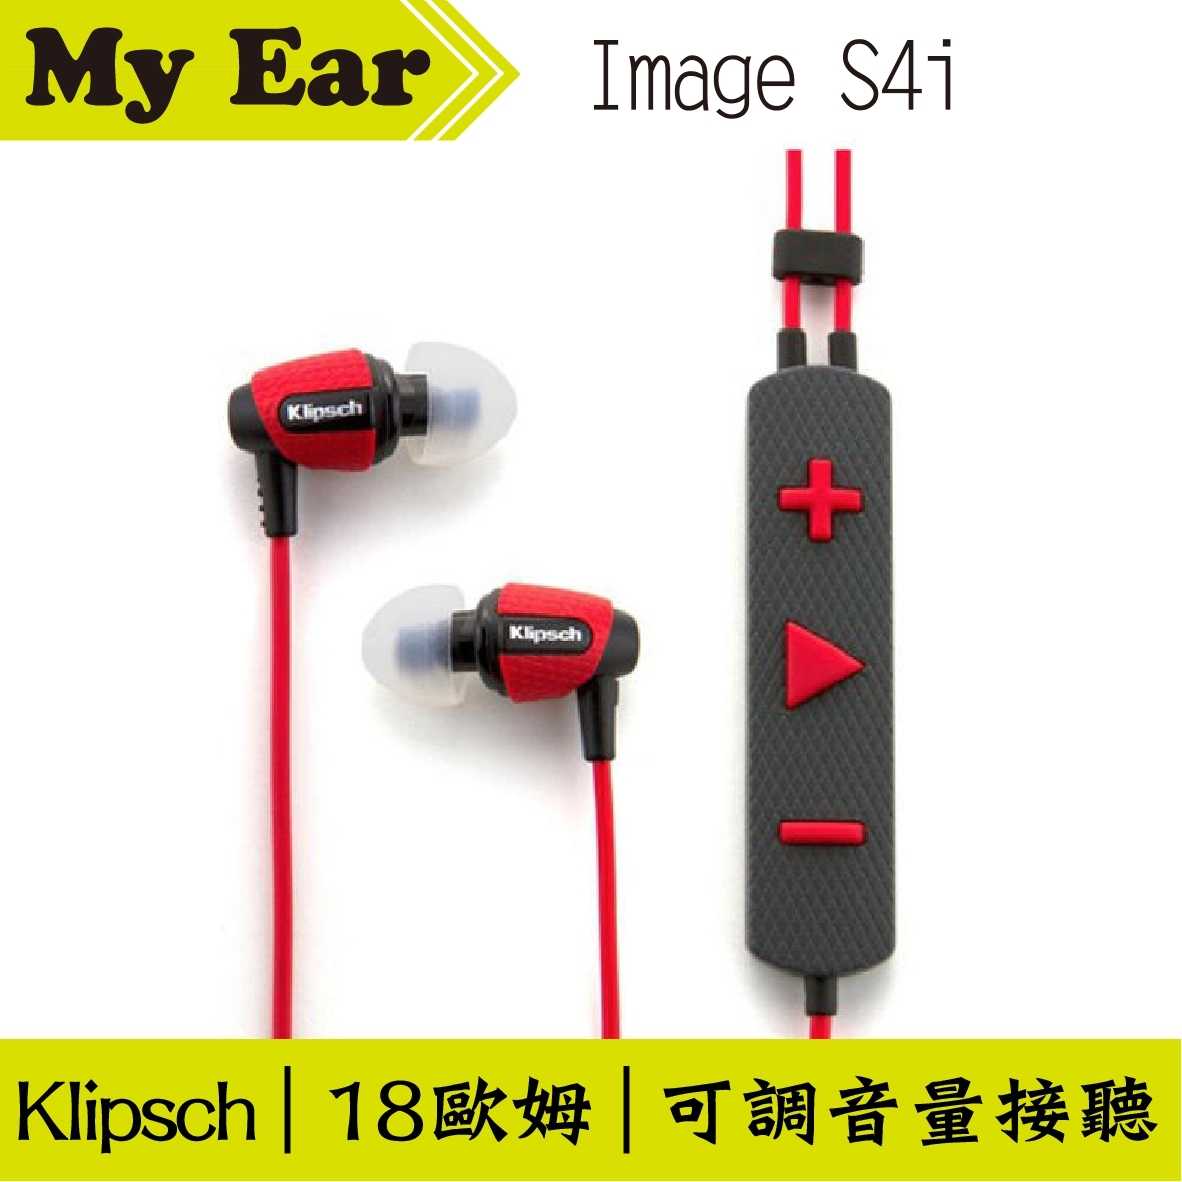 古力奇 Klipsch S4i Rugged 紅色 運動款 My Ear 台中耳機專賣店